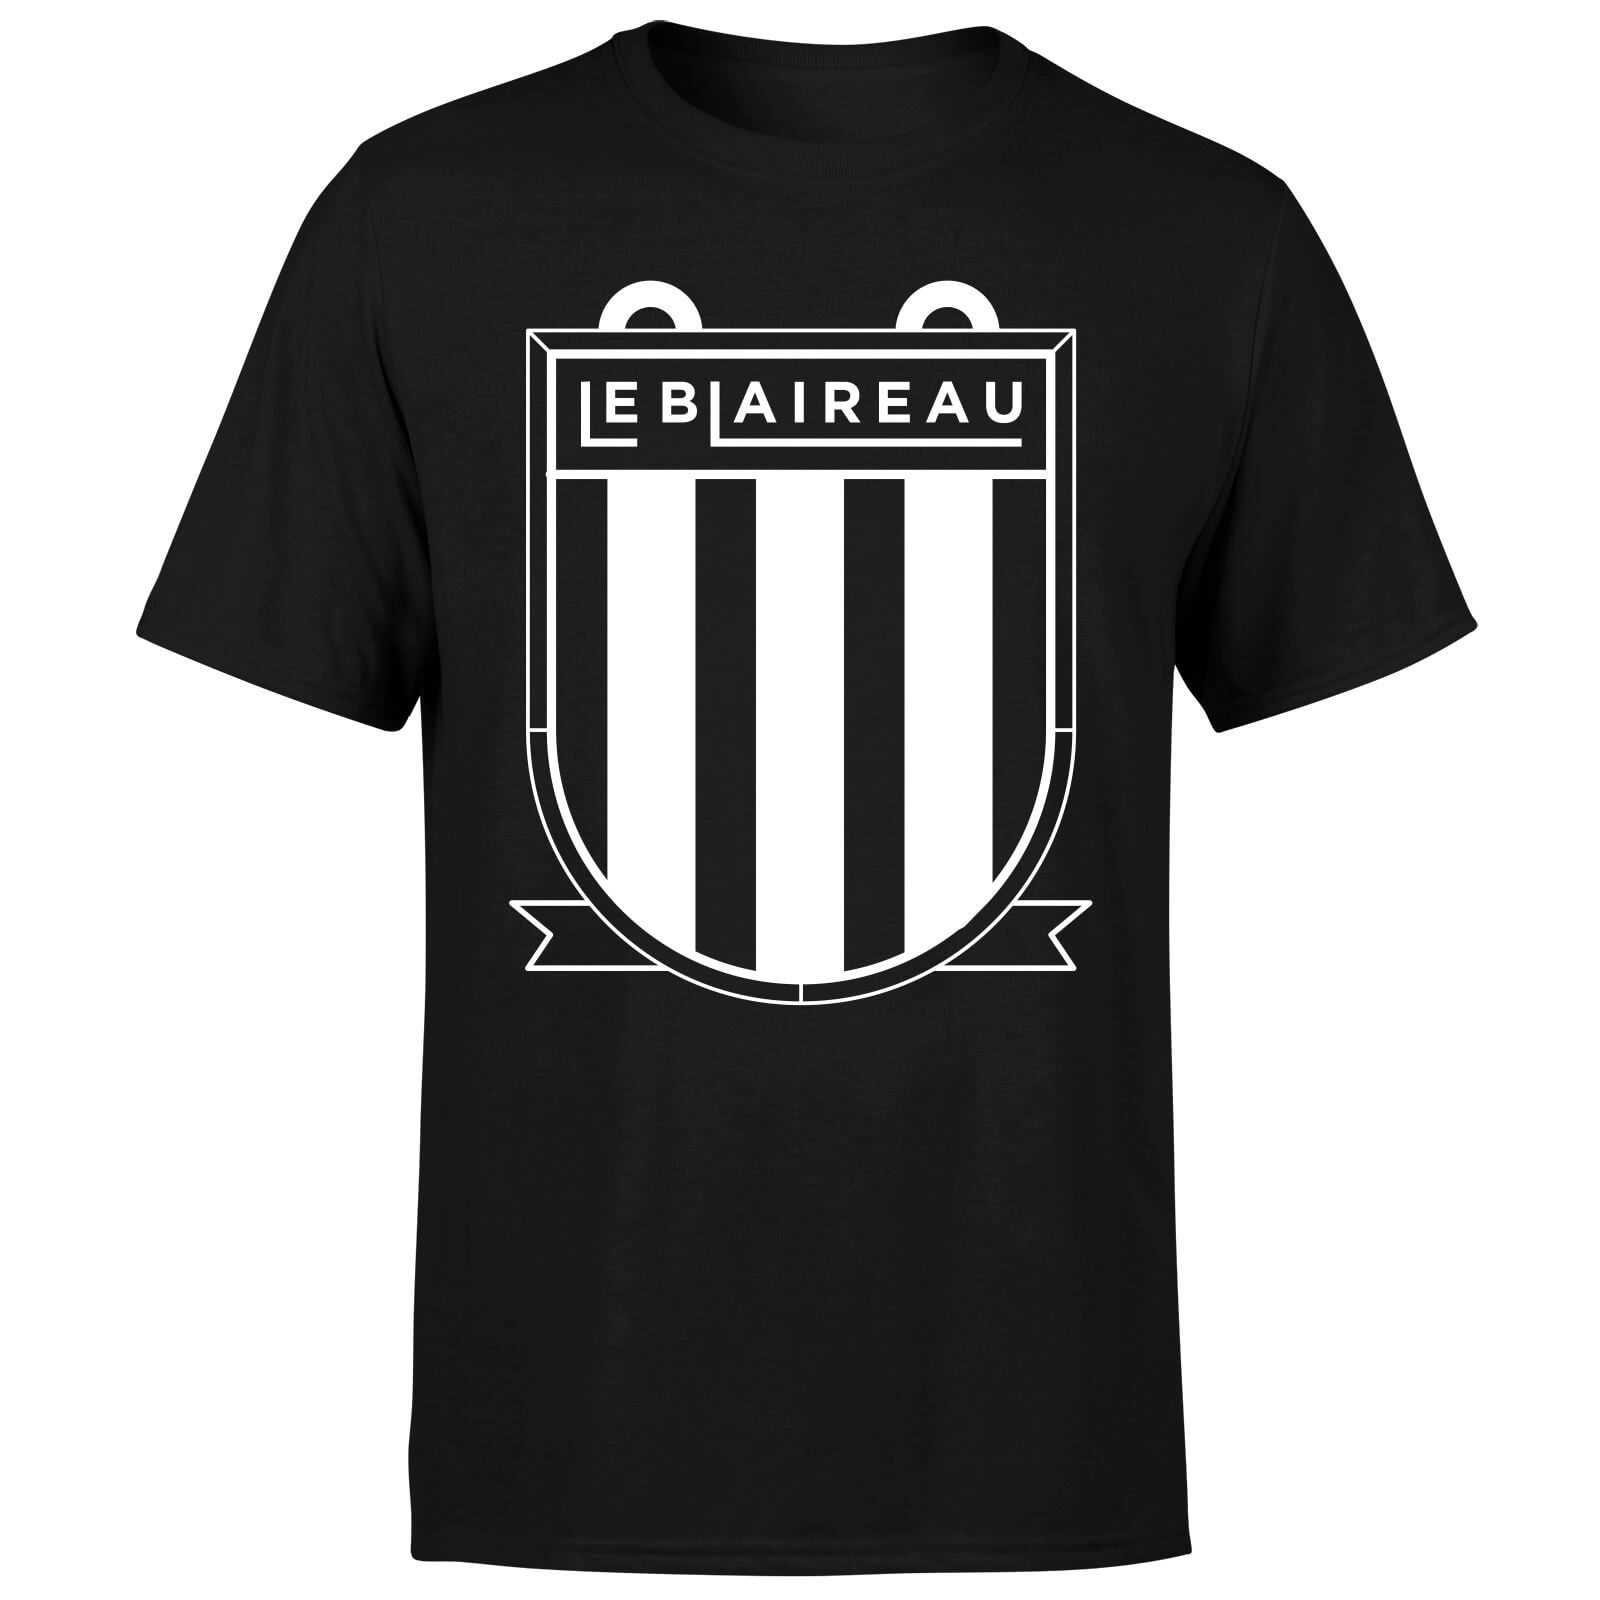 Le Blaireau Men's T-Shirt - XL - Black